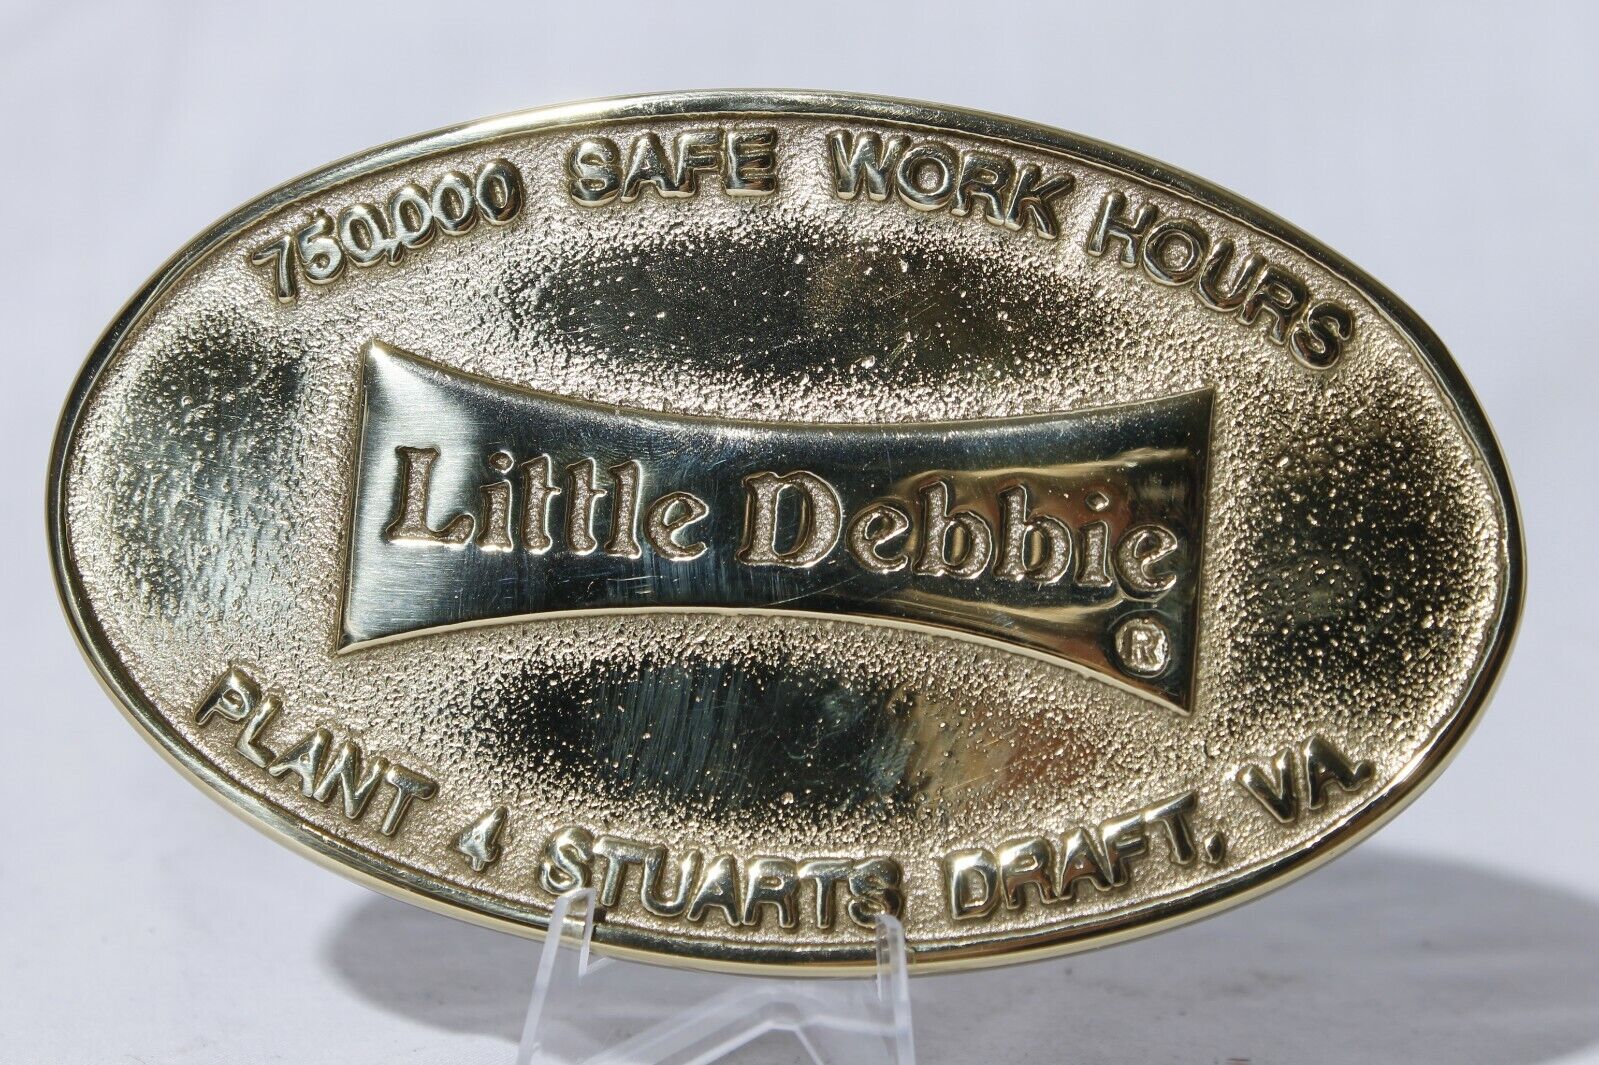 Virginia Metalcrafters Little Debbie Safe Work Hours Plaque